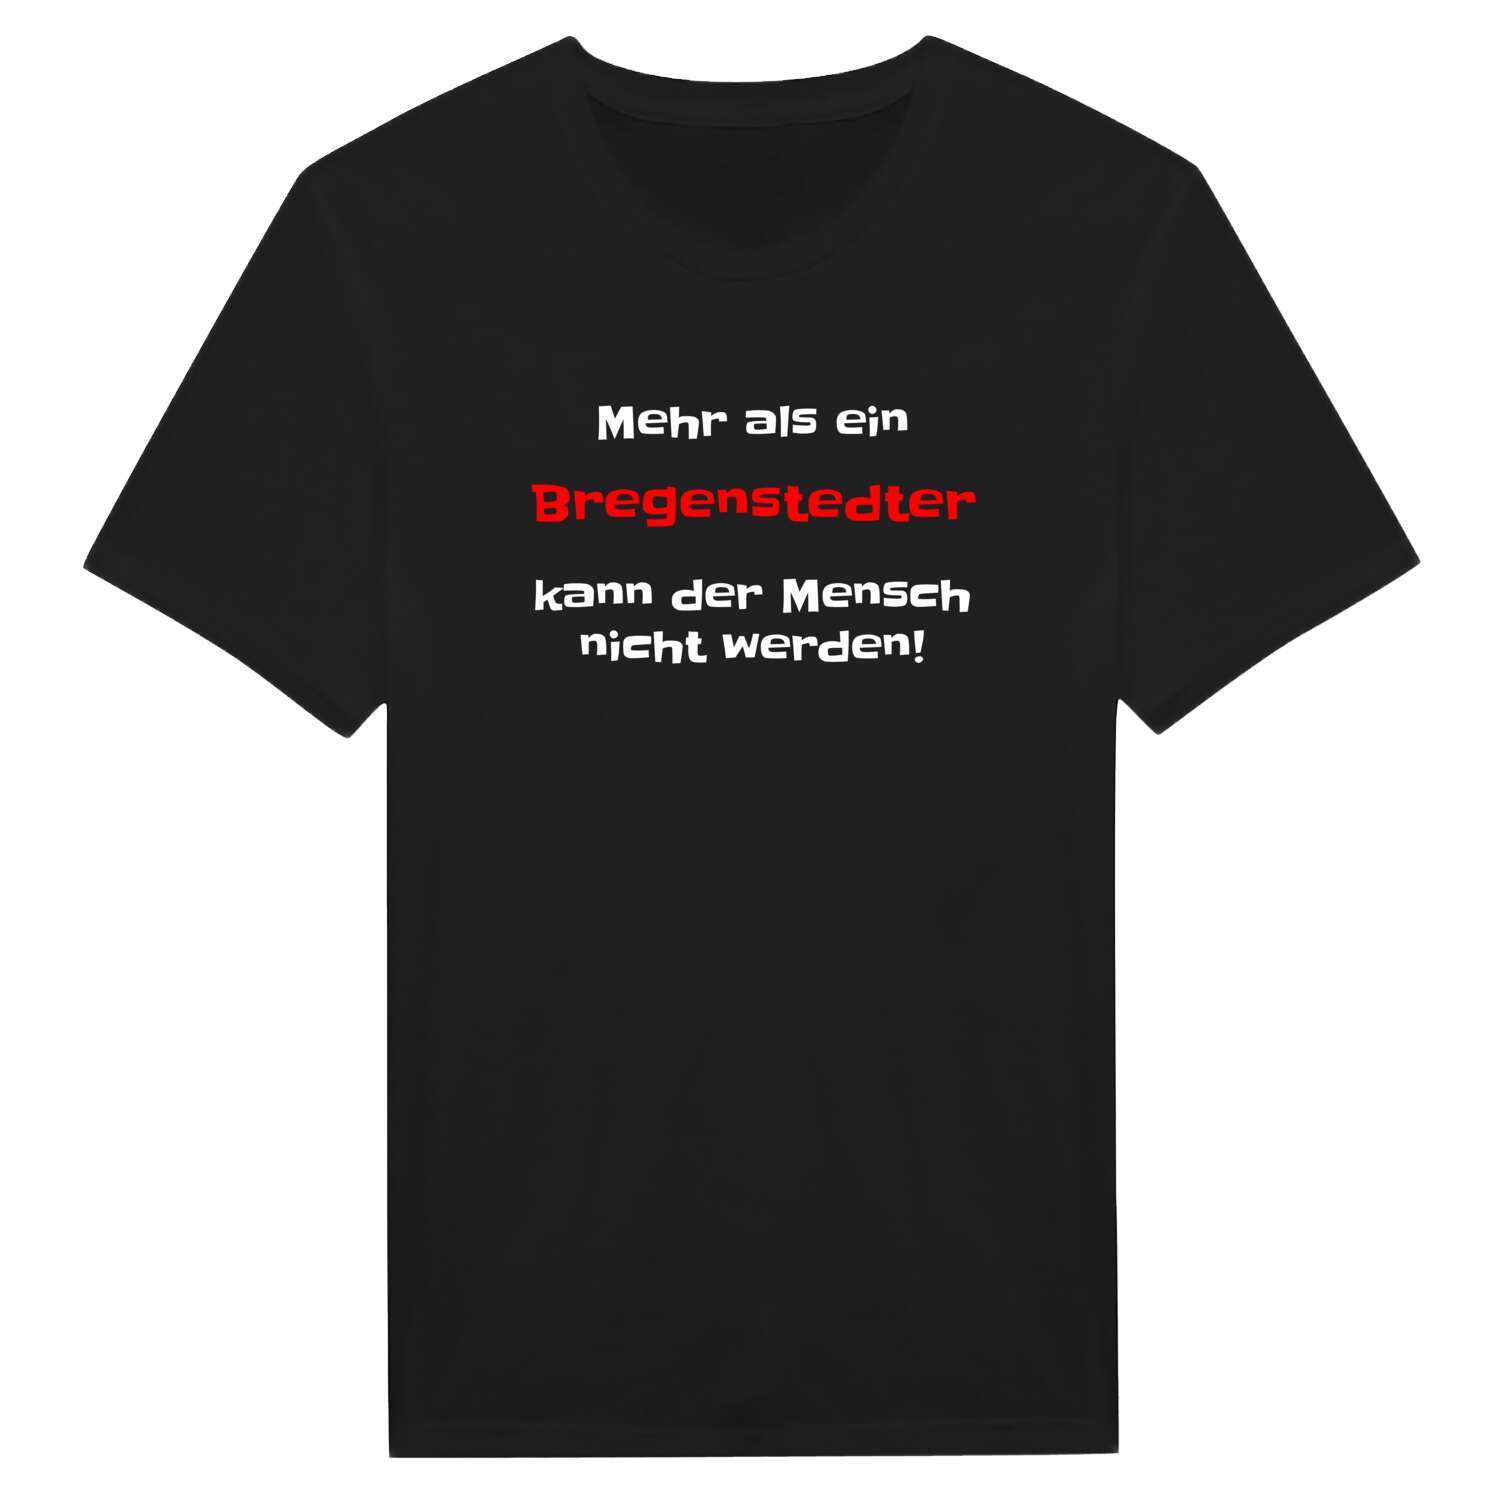 Bregenstedt T-Shirt »Mehr als ein«